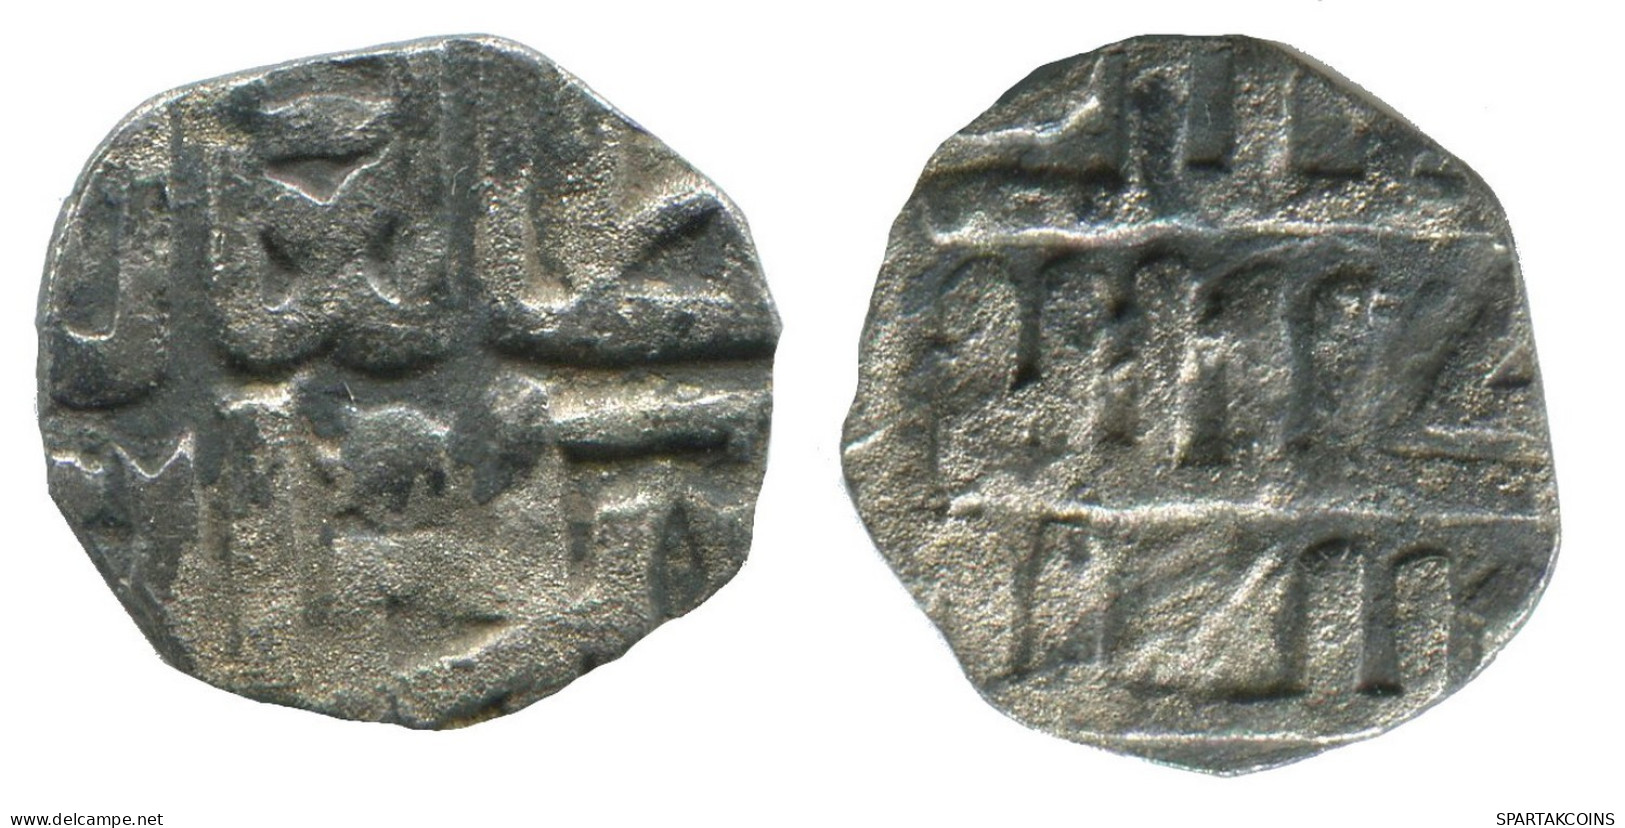 GOLDEN HORDE Silver Dirham Medieval Islamic Coin 0.8g/13mm #NNN2033.8.F.A - Islamiche